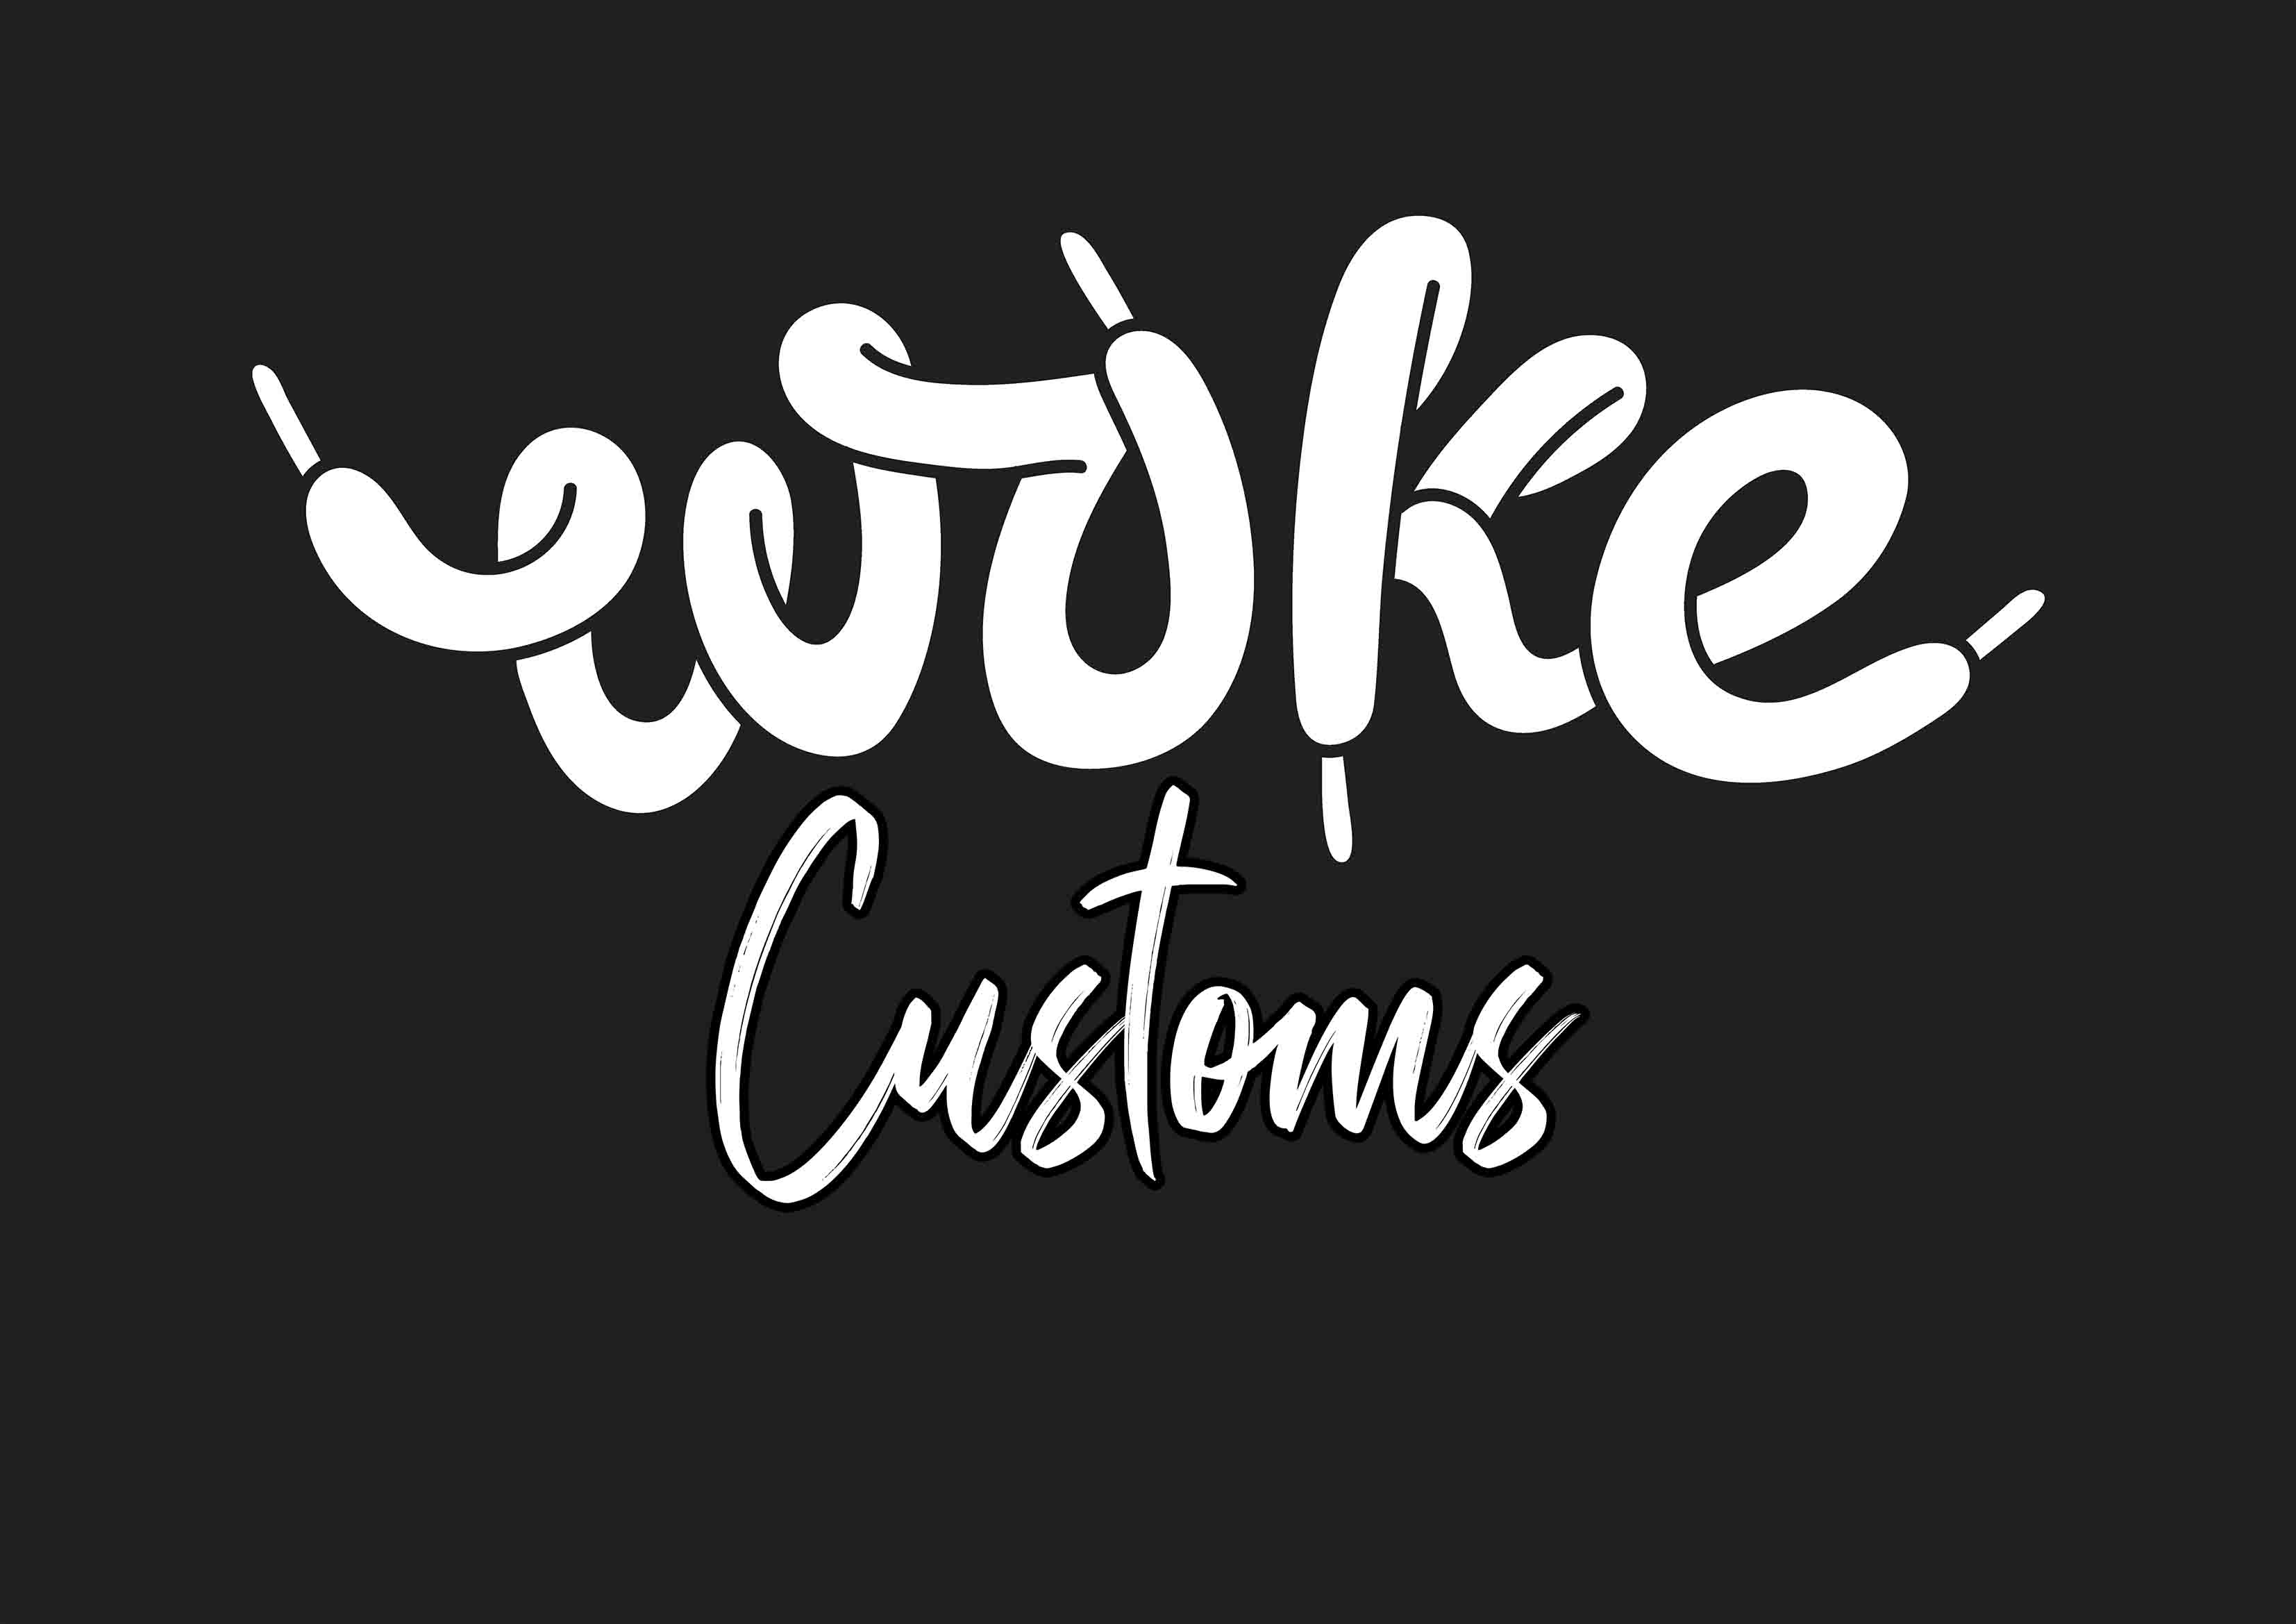 Wokecustoms logo - a custom air force 1 sneaker studio